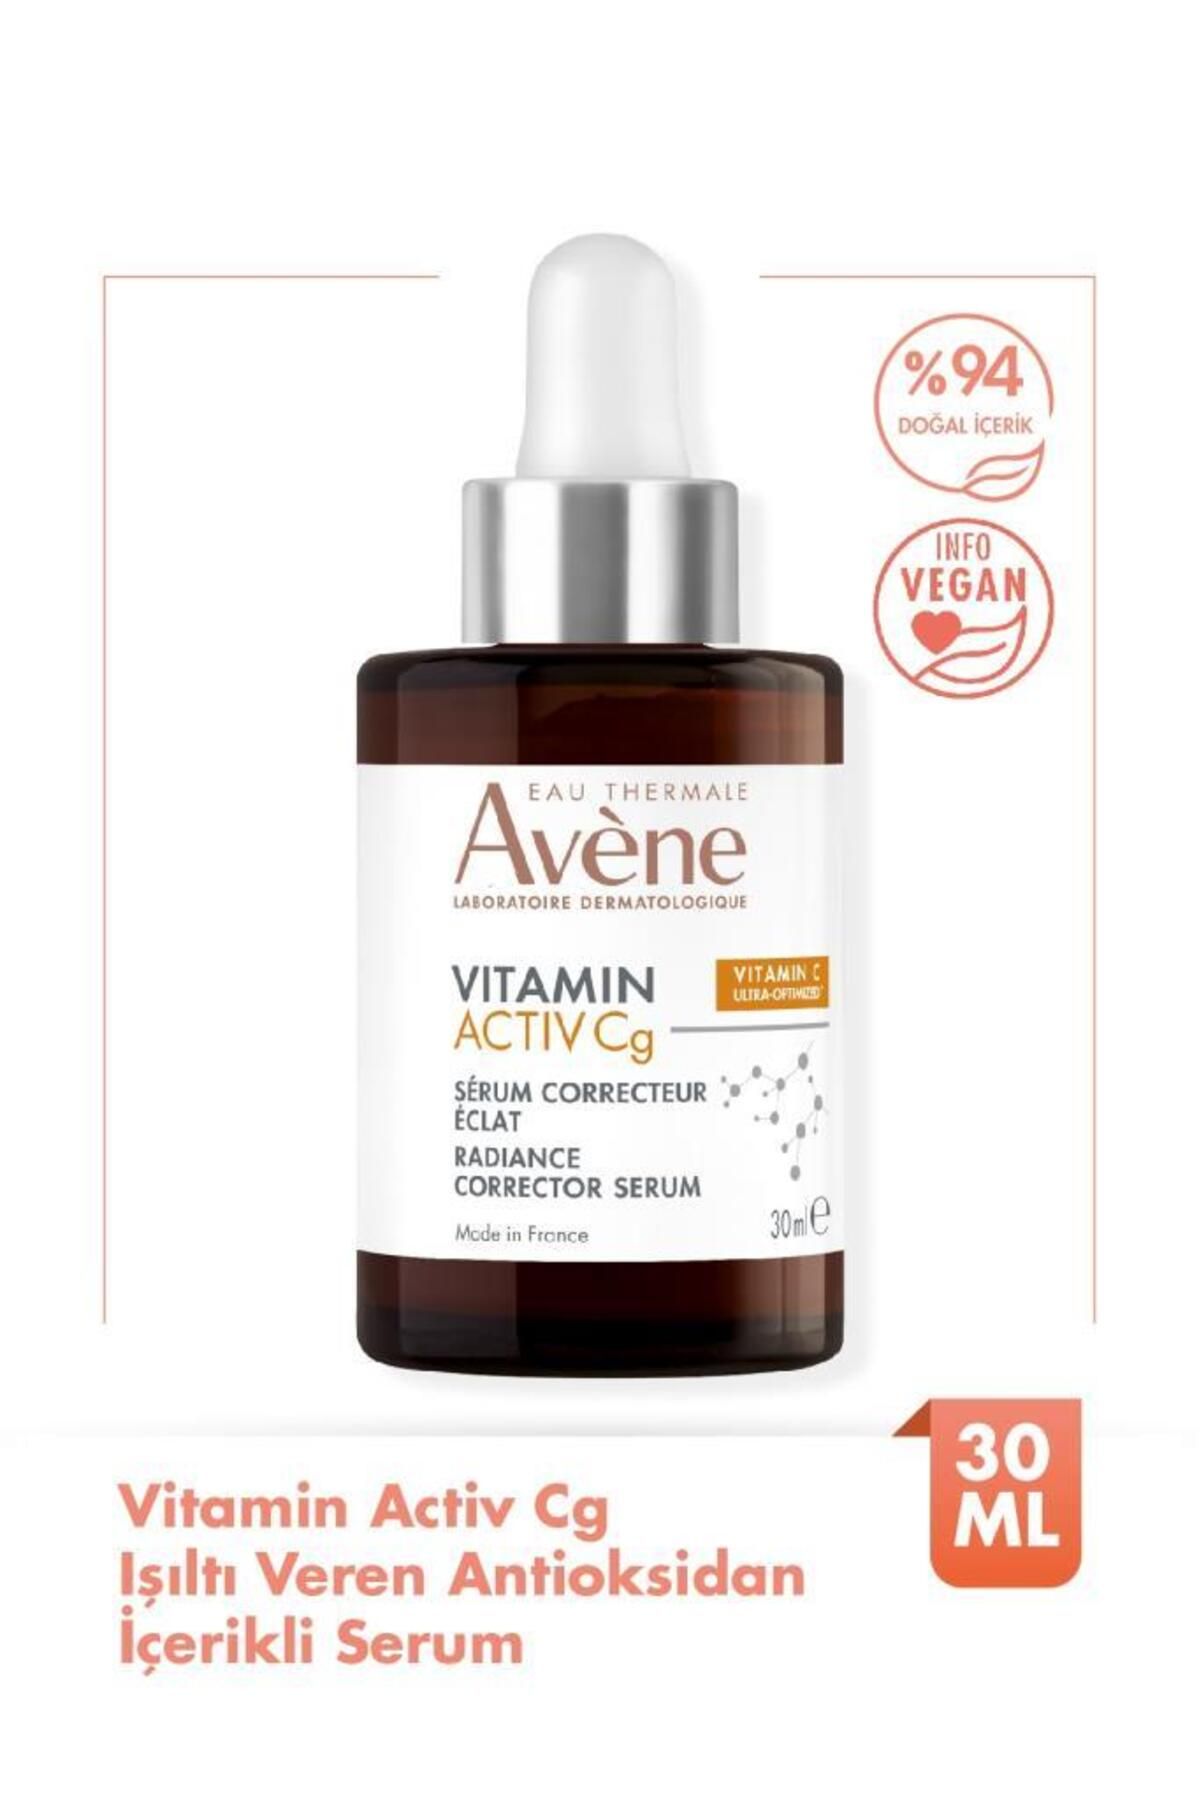 Avene Vitamin Activ Cg Işıltı Veren Antioksidan İçerikli Serum 50 ml